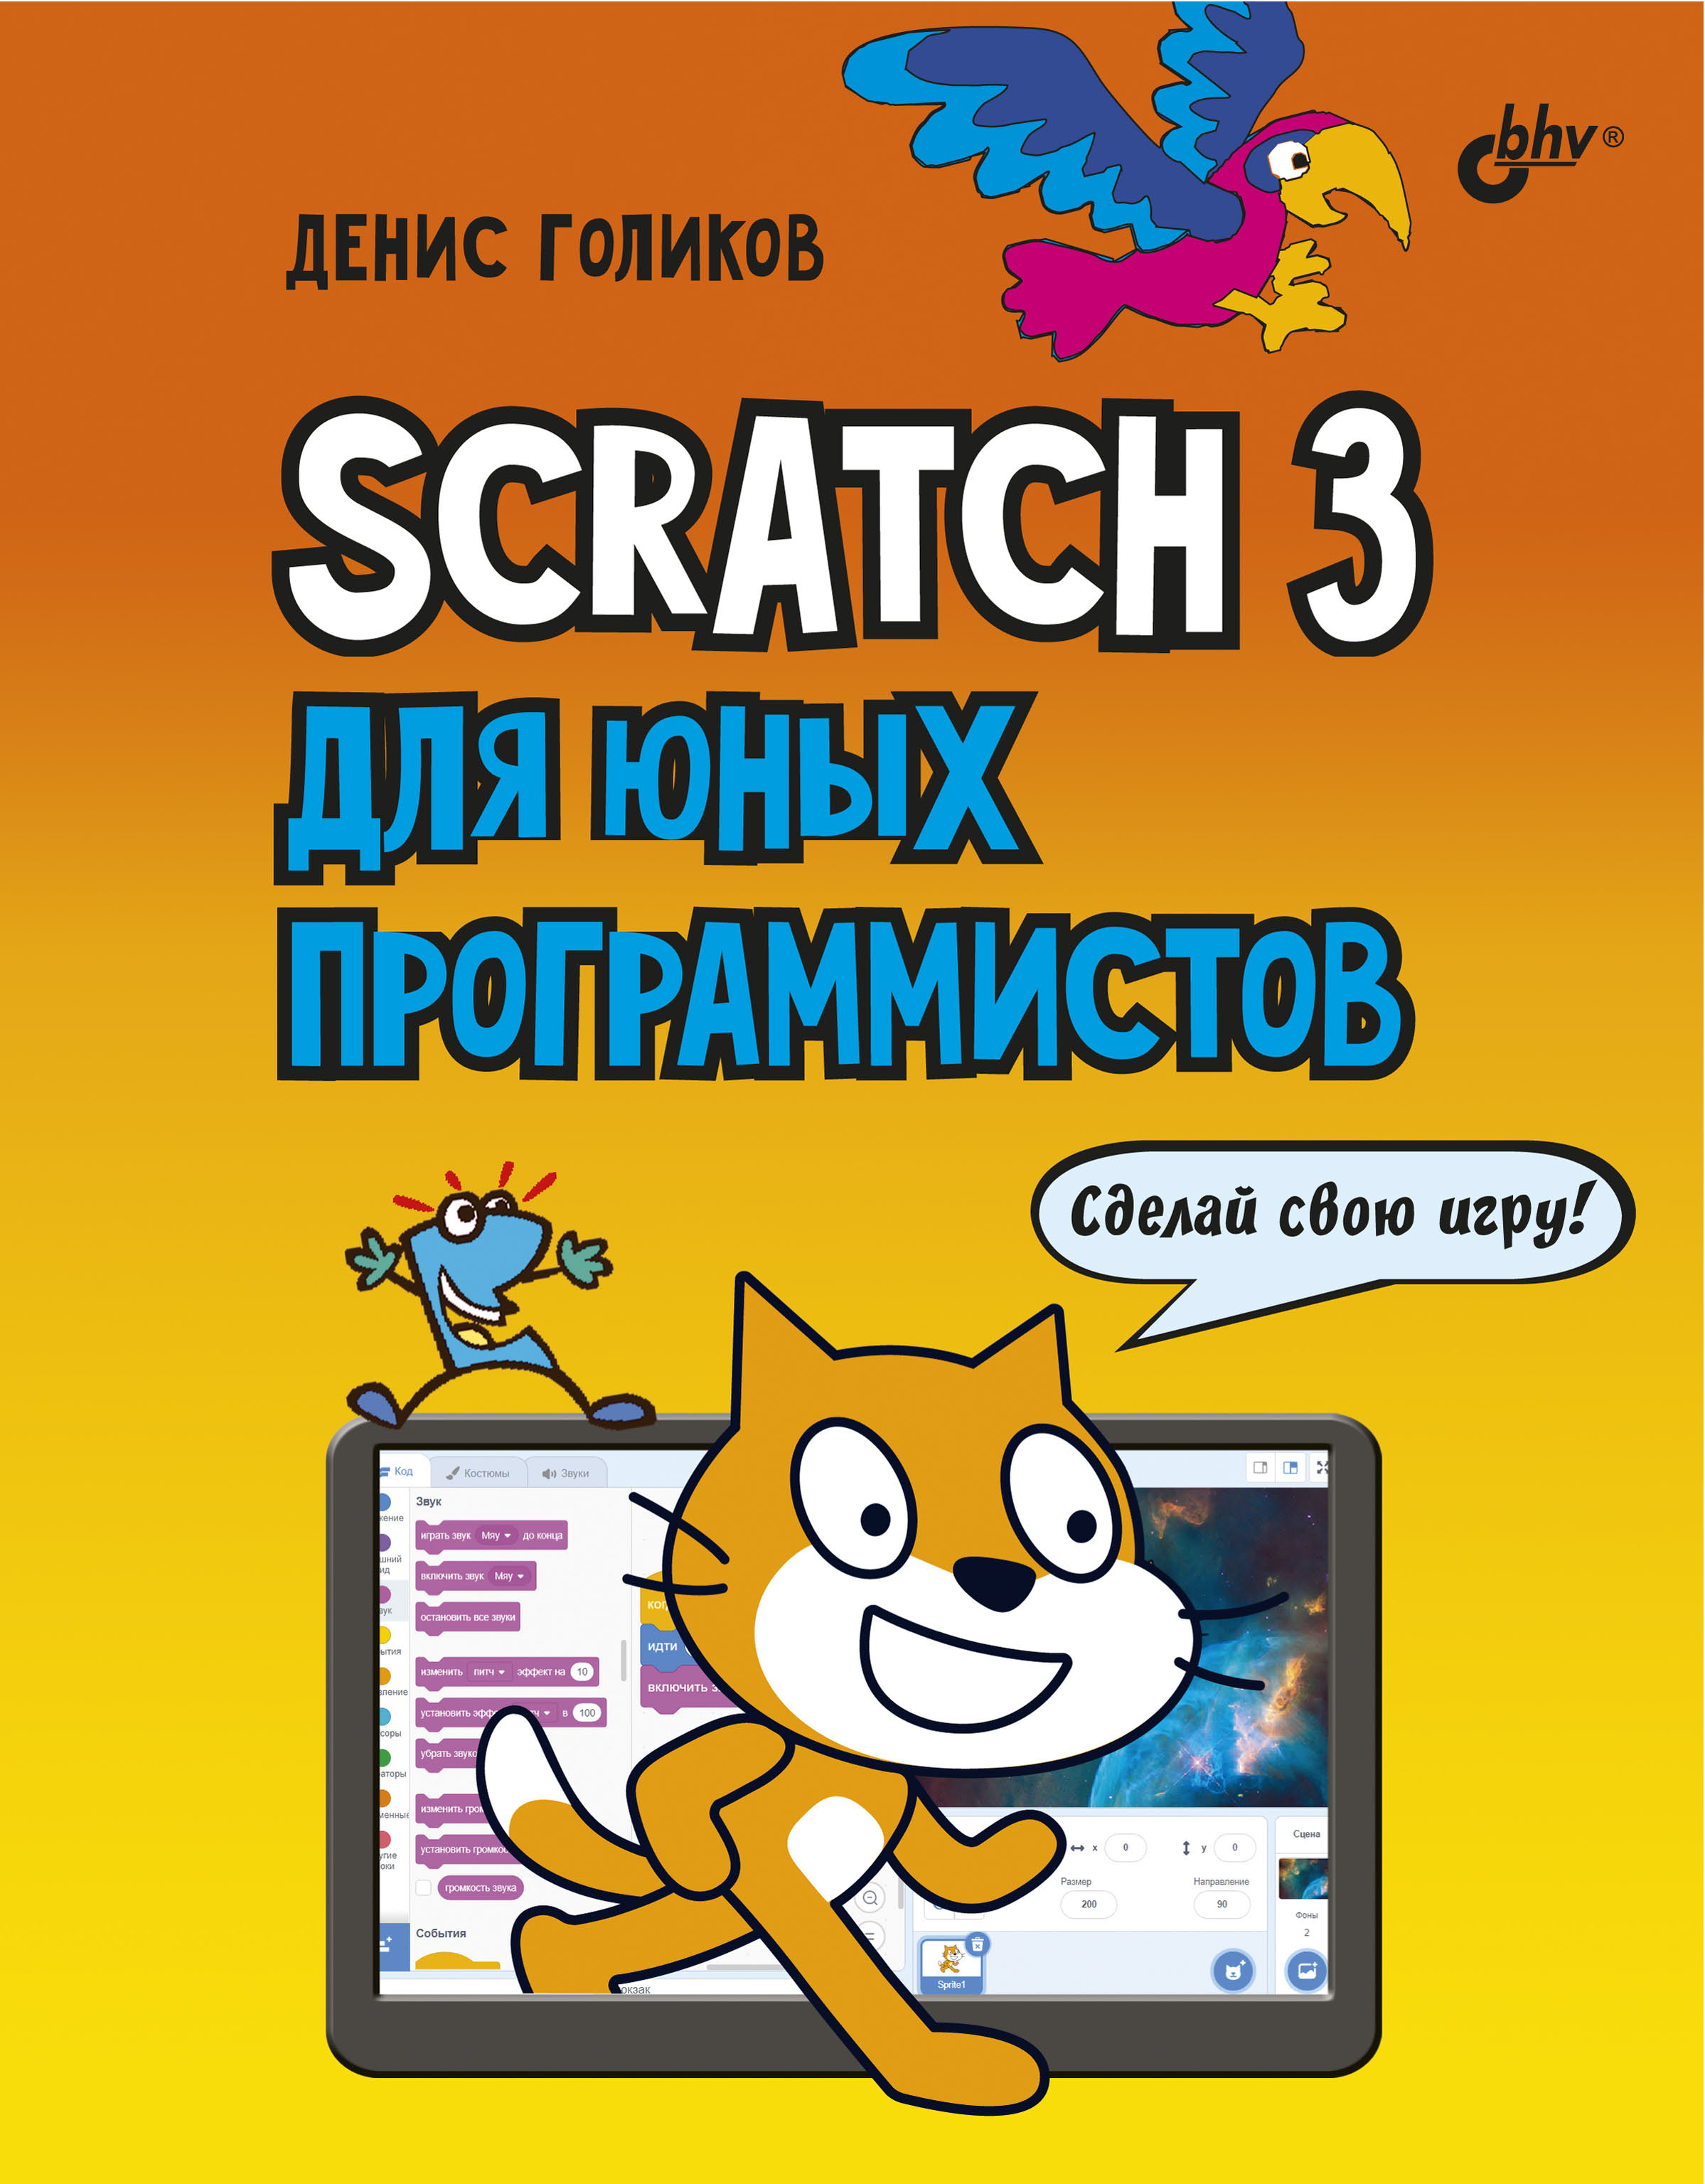 Книга  Scratch 3 для юных программистов созданная Денис Владимирович Голиков может относится к жанру детская познавательная и развивающая литература, книги для подростков, программирование. Стоимость электронной книги Scratch 3 для юных программистов с идентификатором 23878245 составляет 400.00 руб.